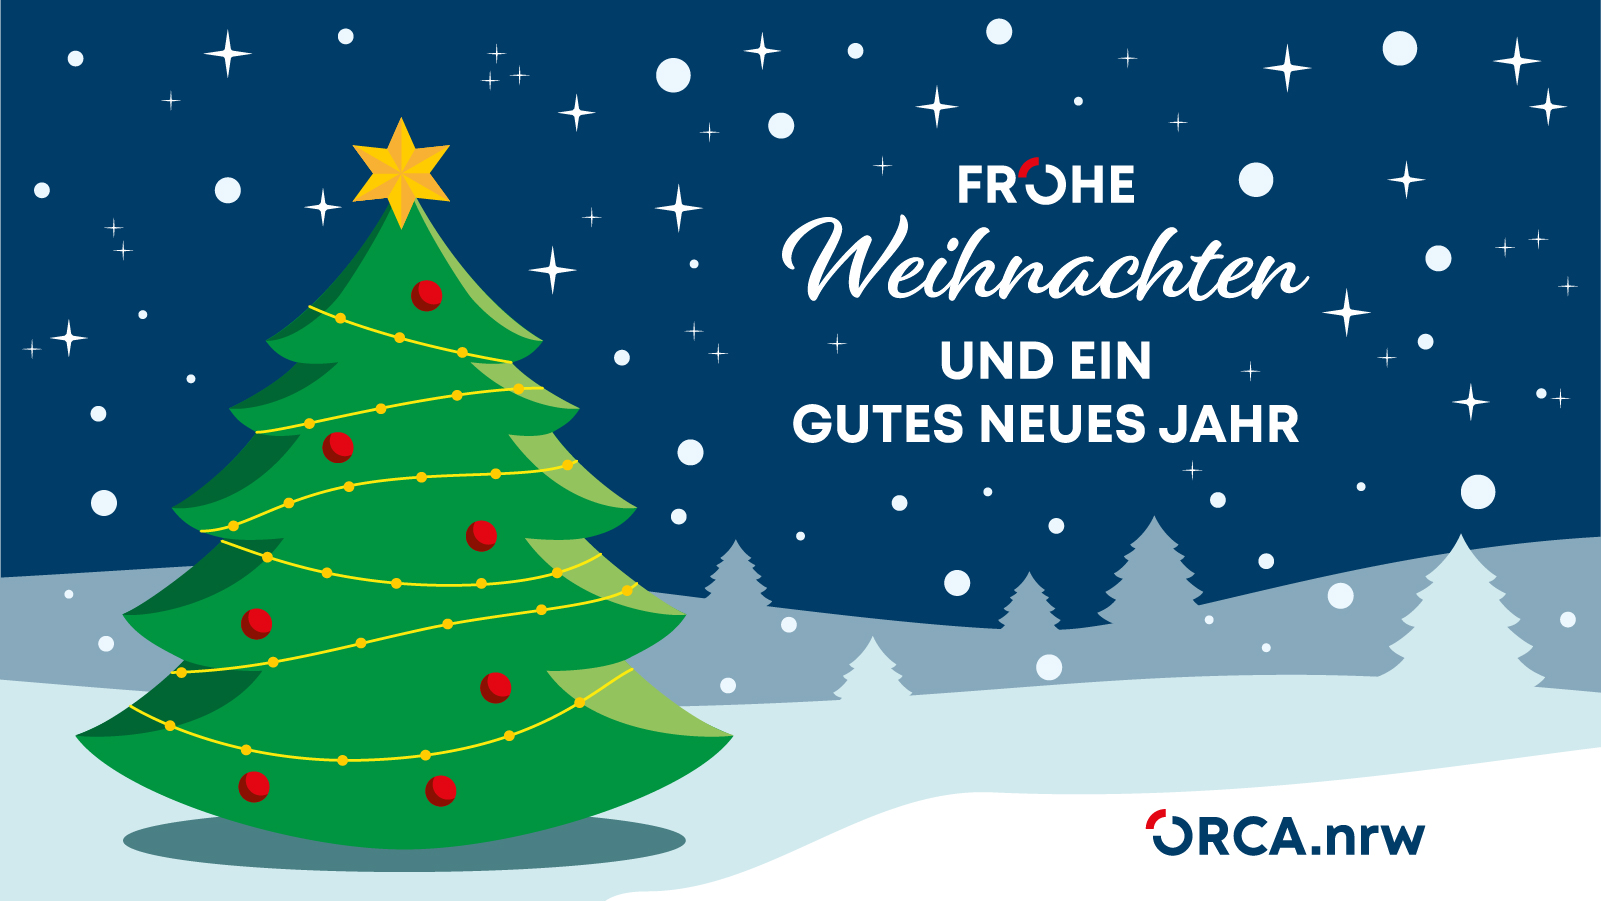 Frohe Weihnachten und ein Gutes Neues Jahr wünscht ORCA.nrw. Grafik mit Weihnachtsbaum, Shneeflocken und v.g. Text sowie ORCA.nrw-Logo.